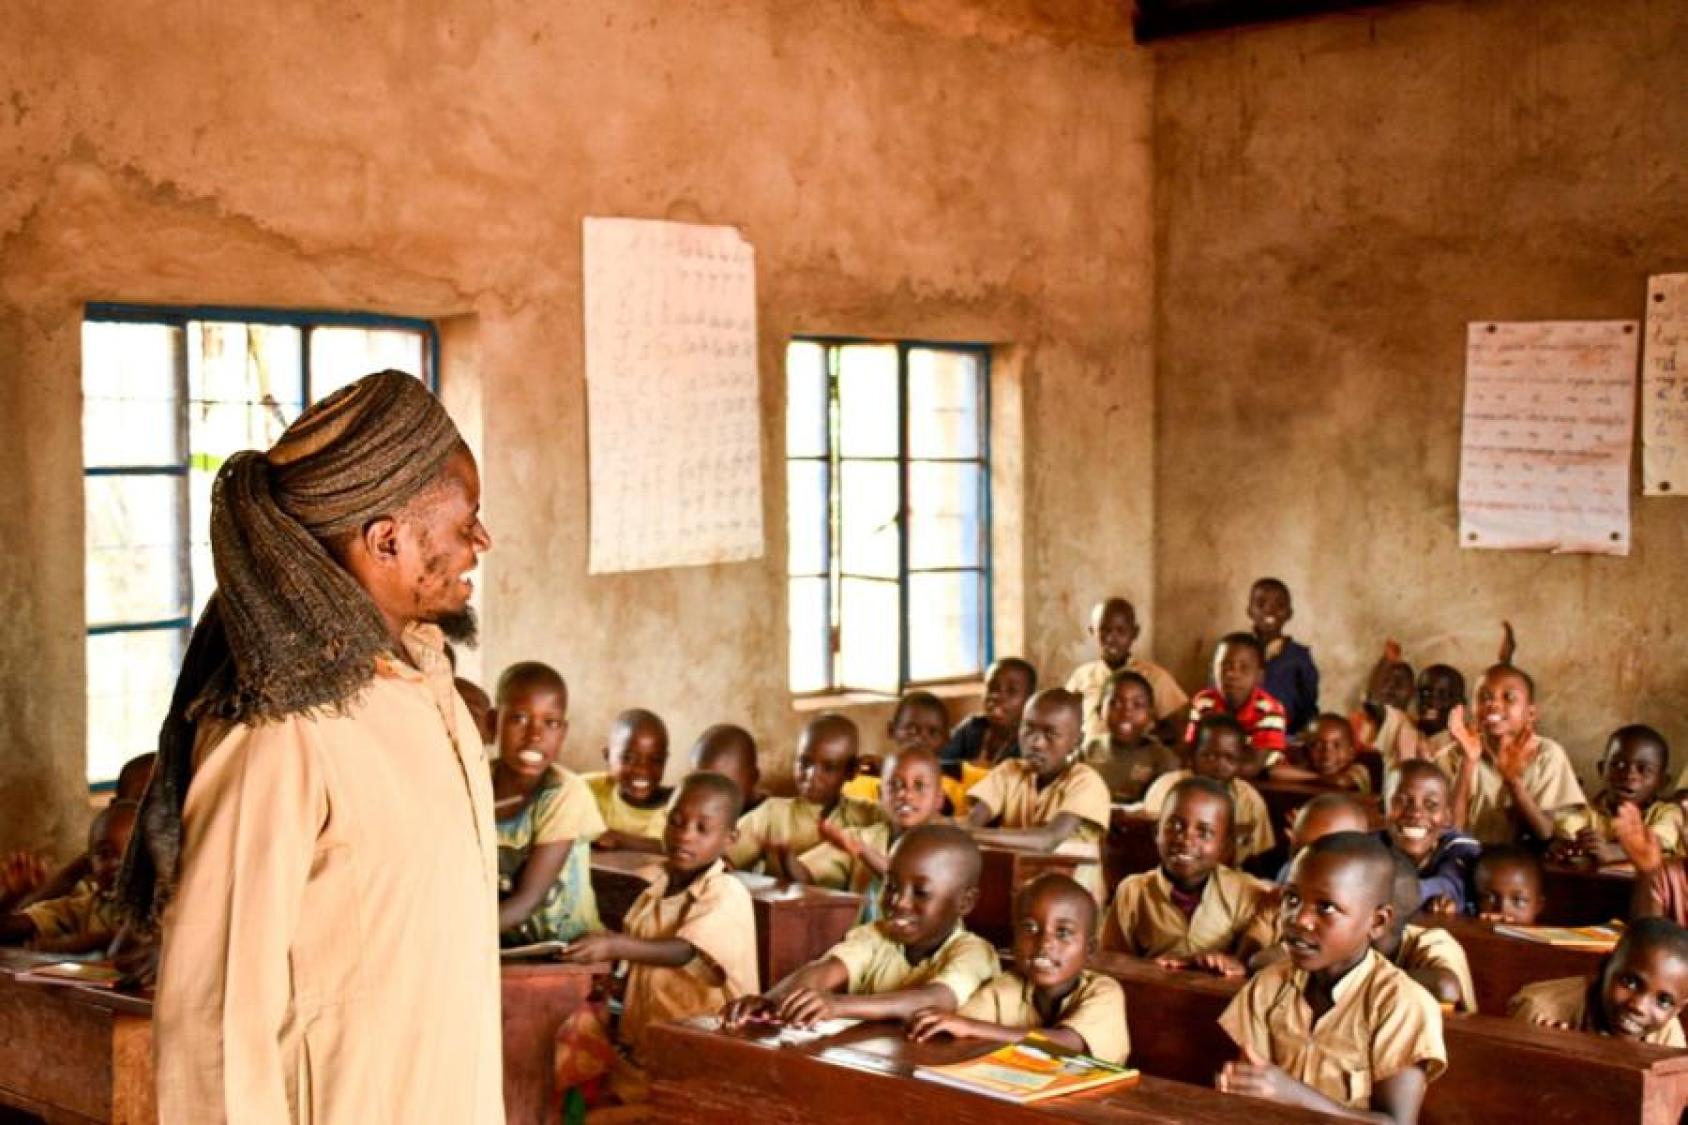 Un homme portant un turban et un habit traditionnel burundais de couleur beige fait classe à de jeunes garçons dans une école.